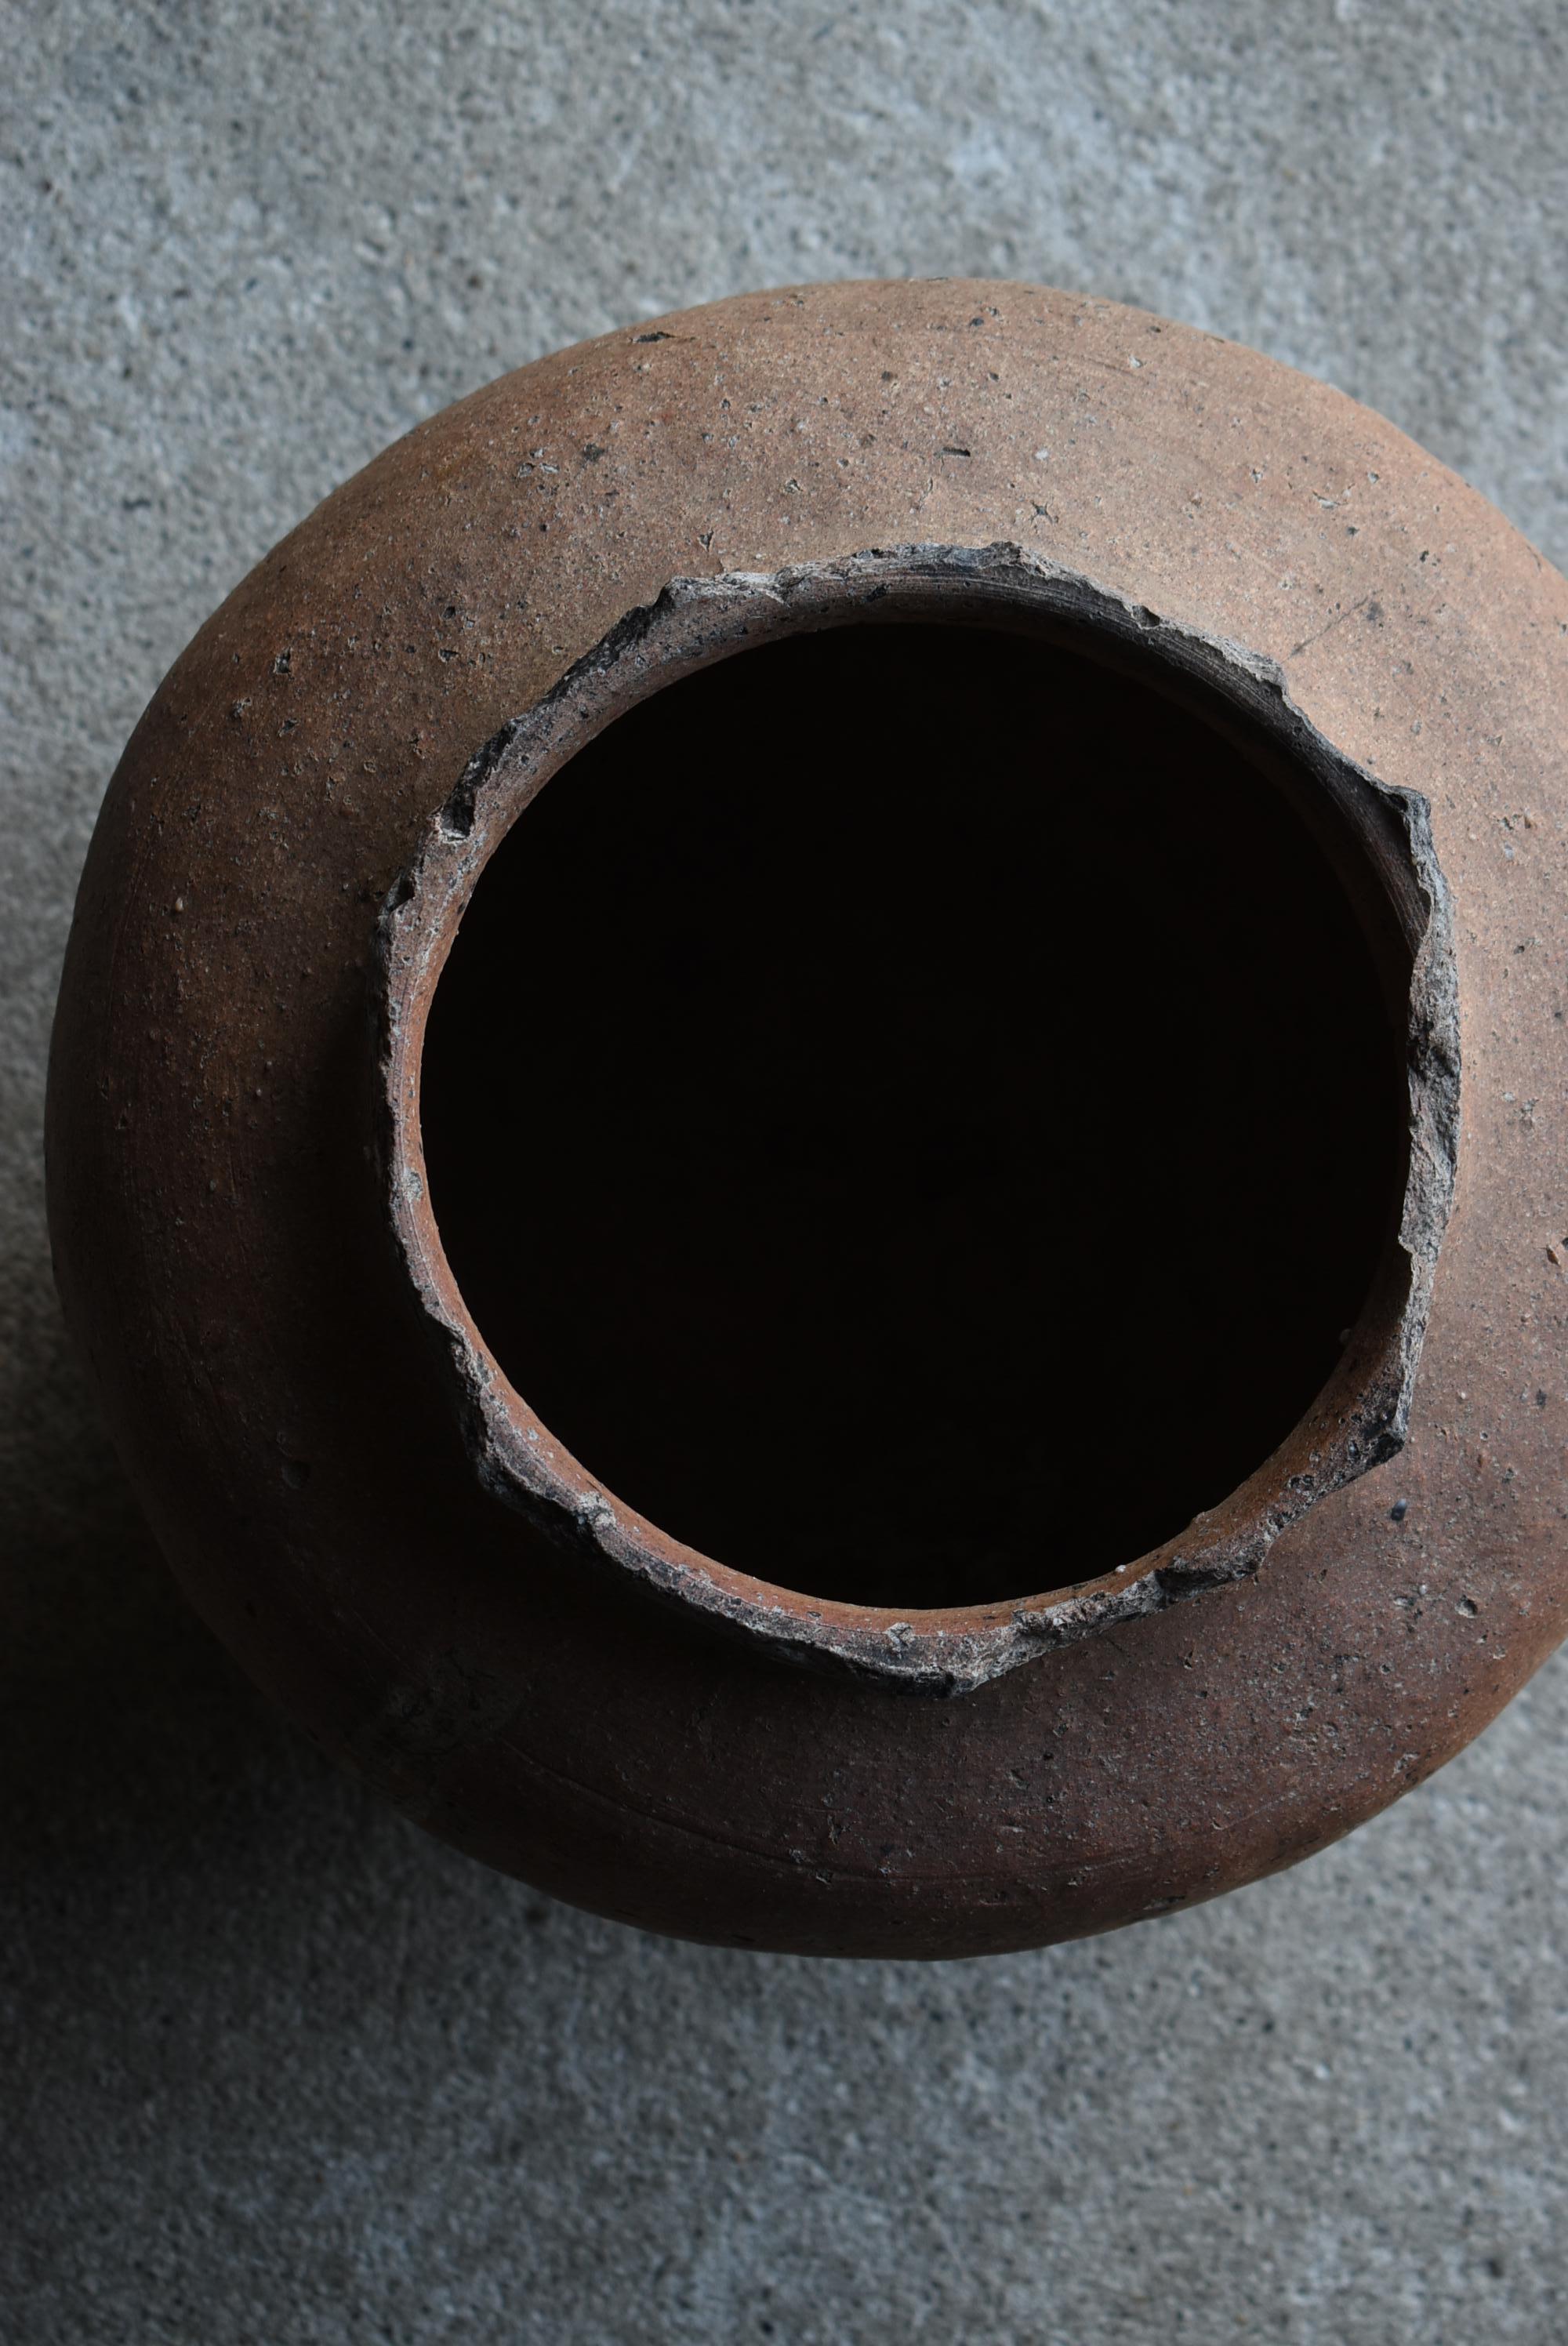 Japanese Antique Pottery Vase 1400s-1500s / Flower Vase Jar Pot Wabisabi For Sale 9